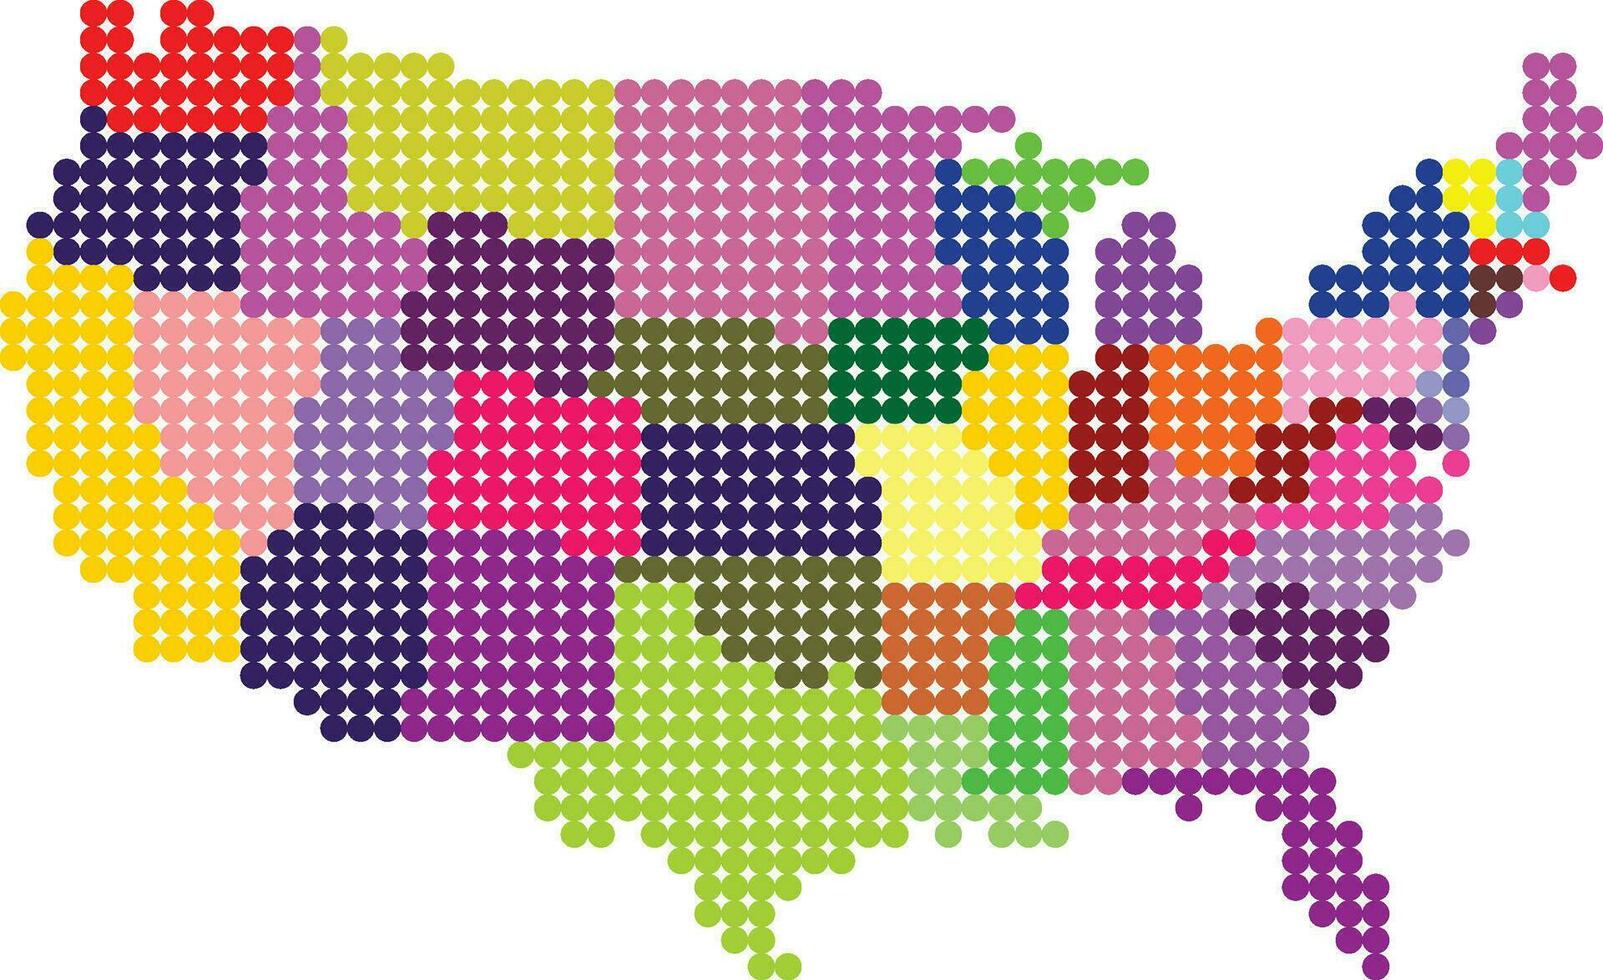 Verenigde Staten van Amerika kaart ontworpen in dots vector